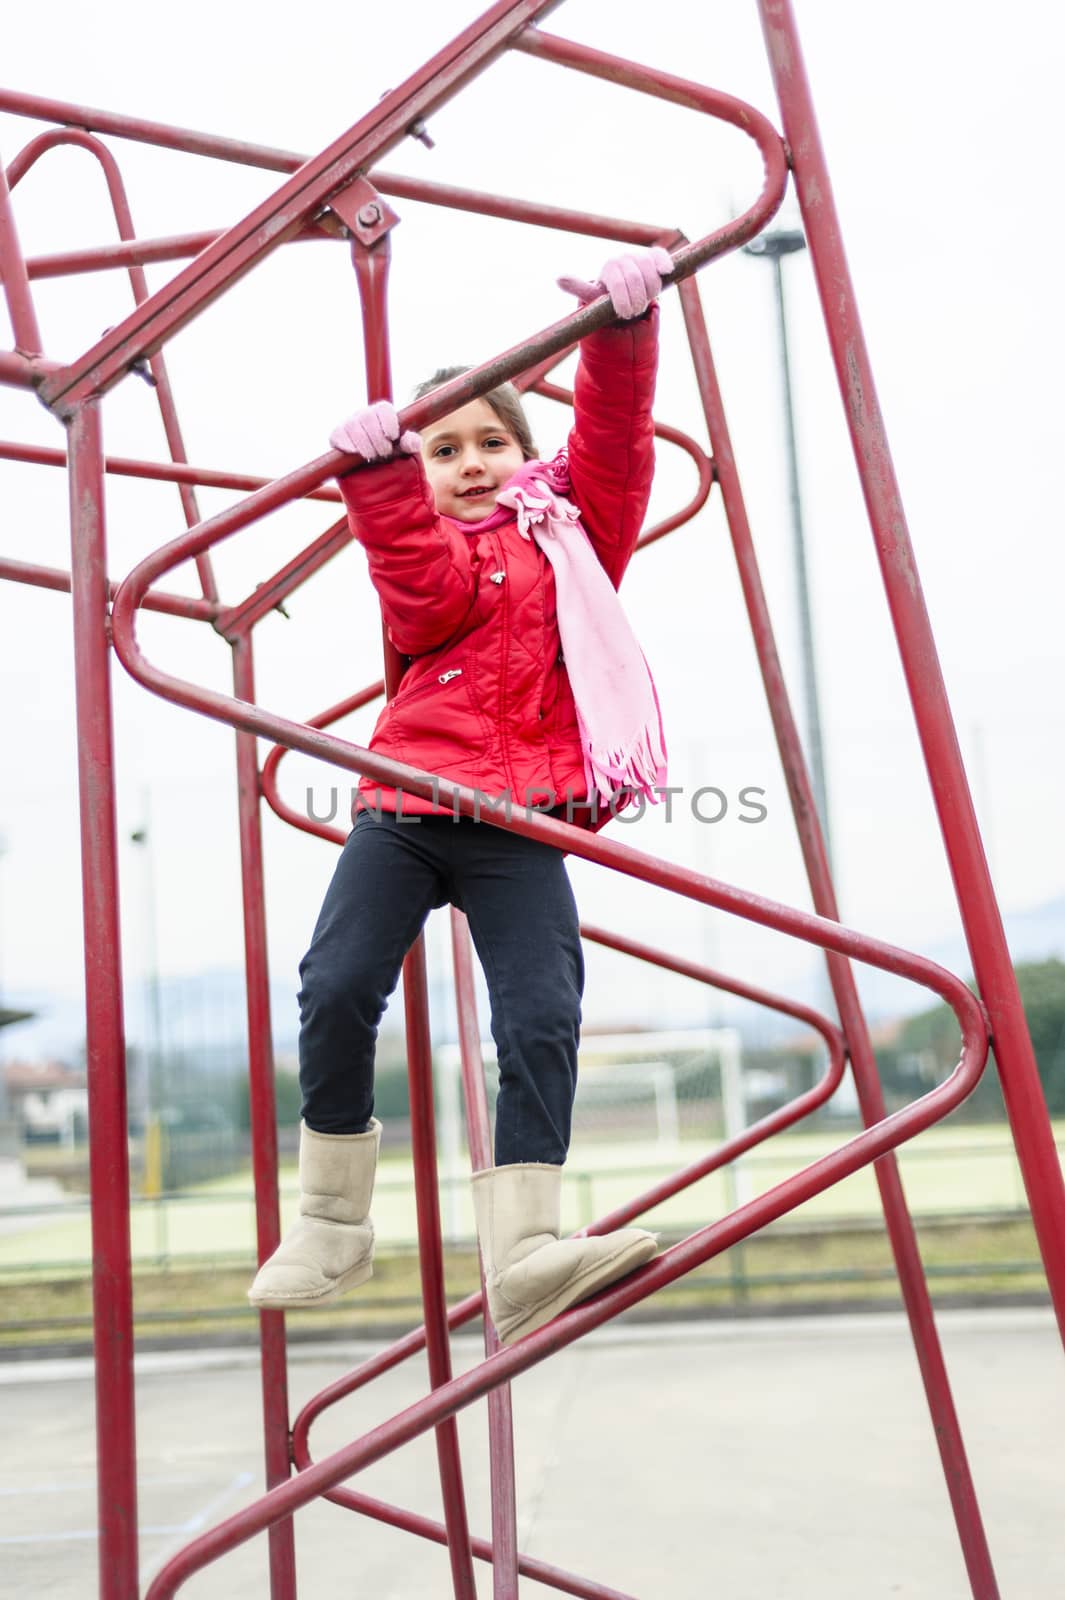 little girl climbs on iron frame of a basketball hoop in an outdoor basketball court